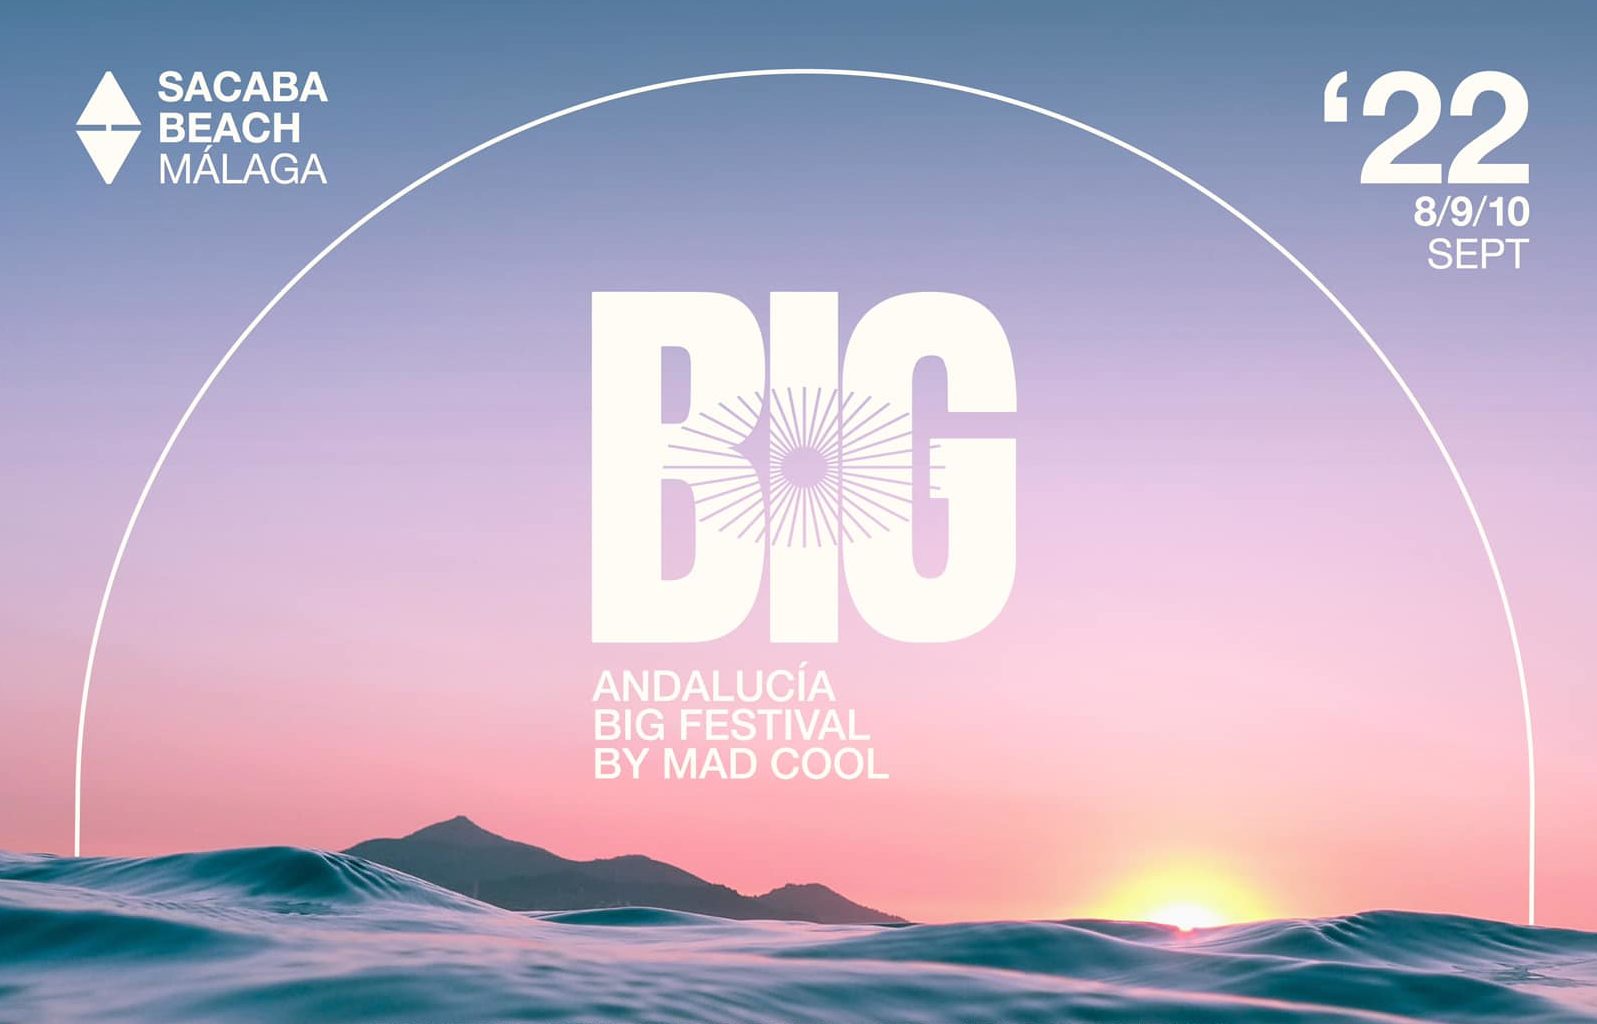 Nace el Andalucía Big Festival By Mad Cool se celebrará los días 8, 9 y 10 de septiembre en la playa Sacaba Beach de Málaga